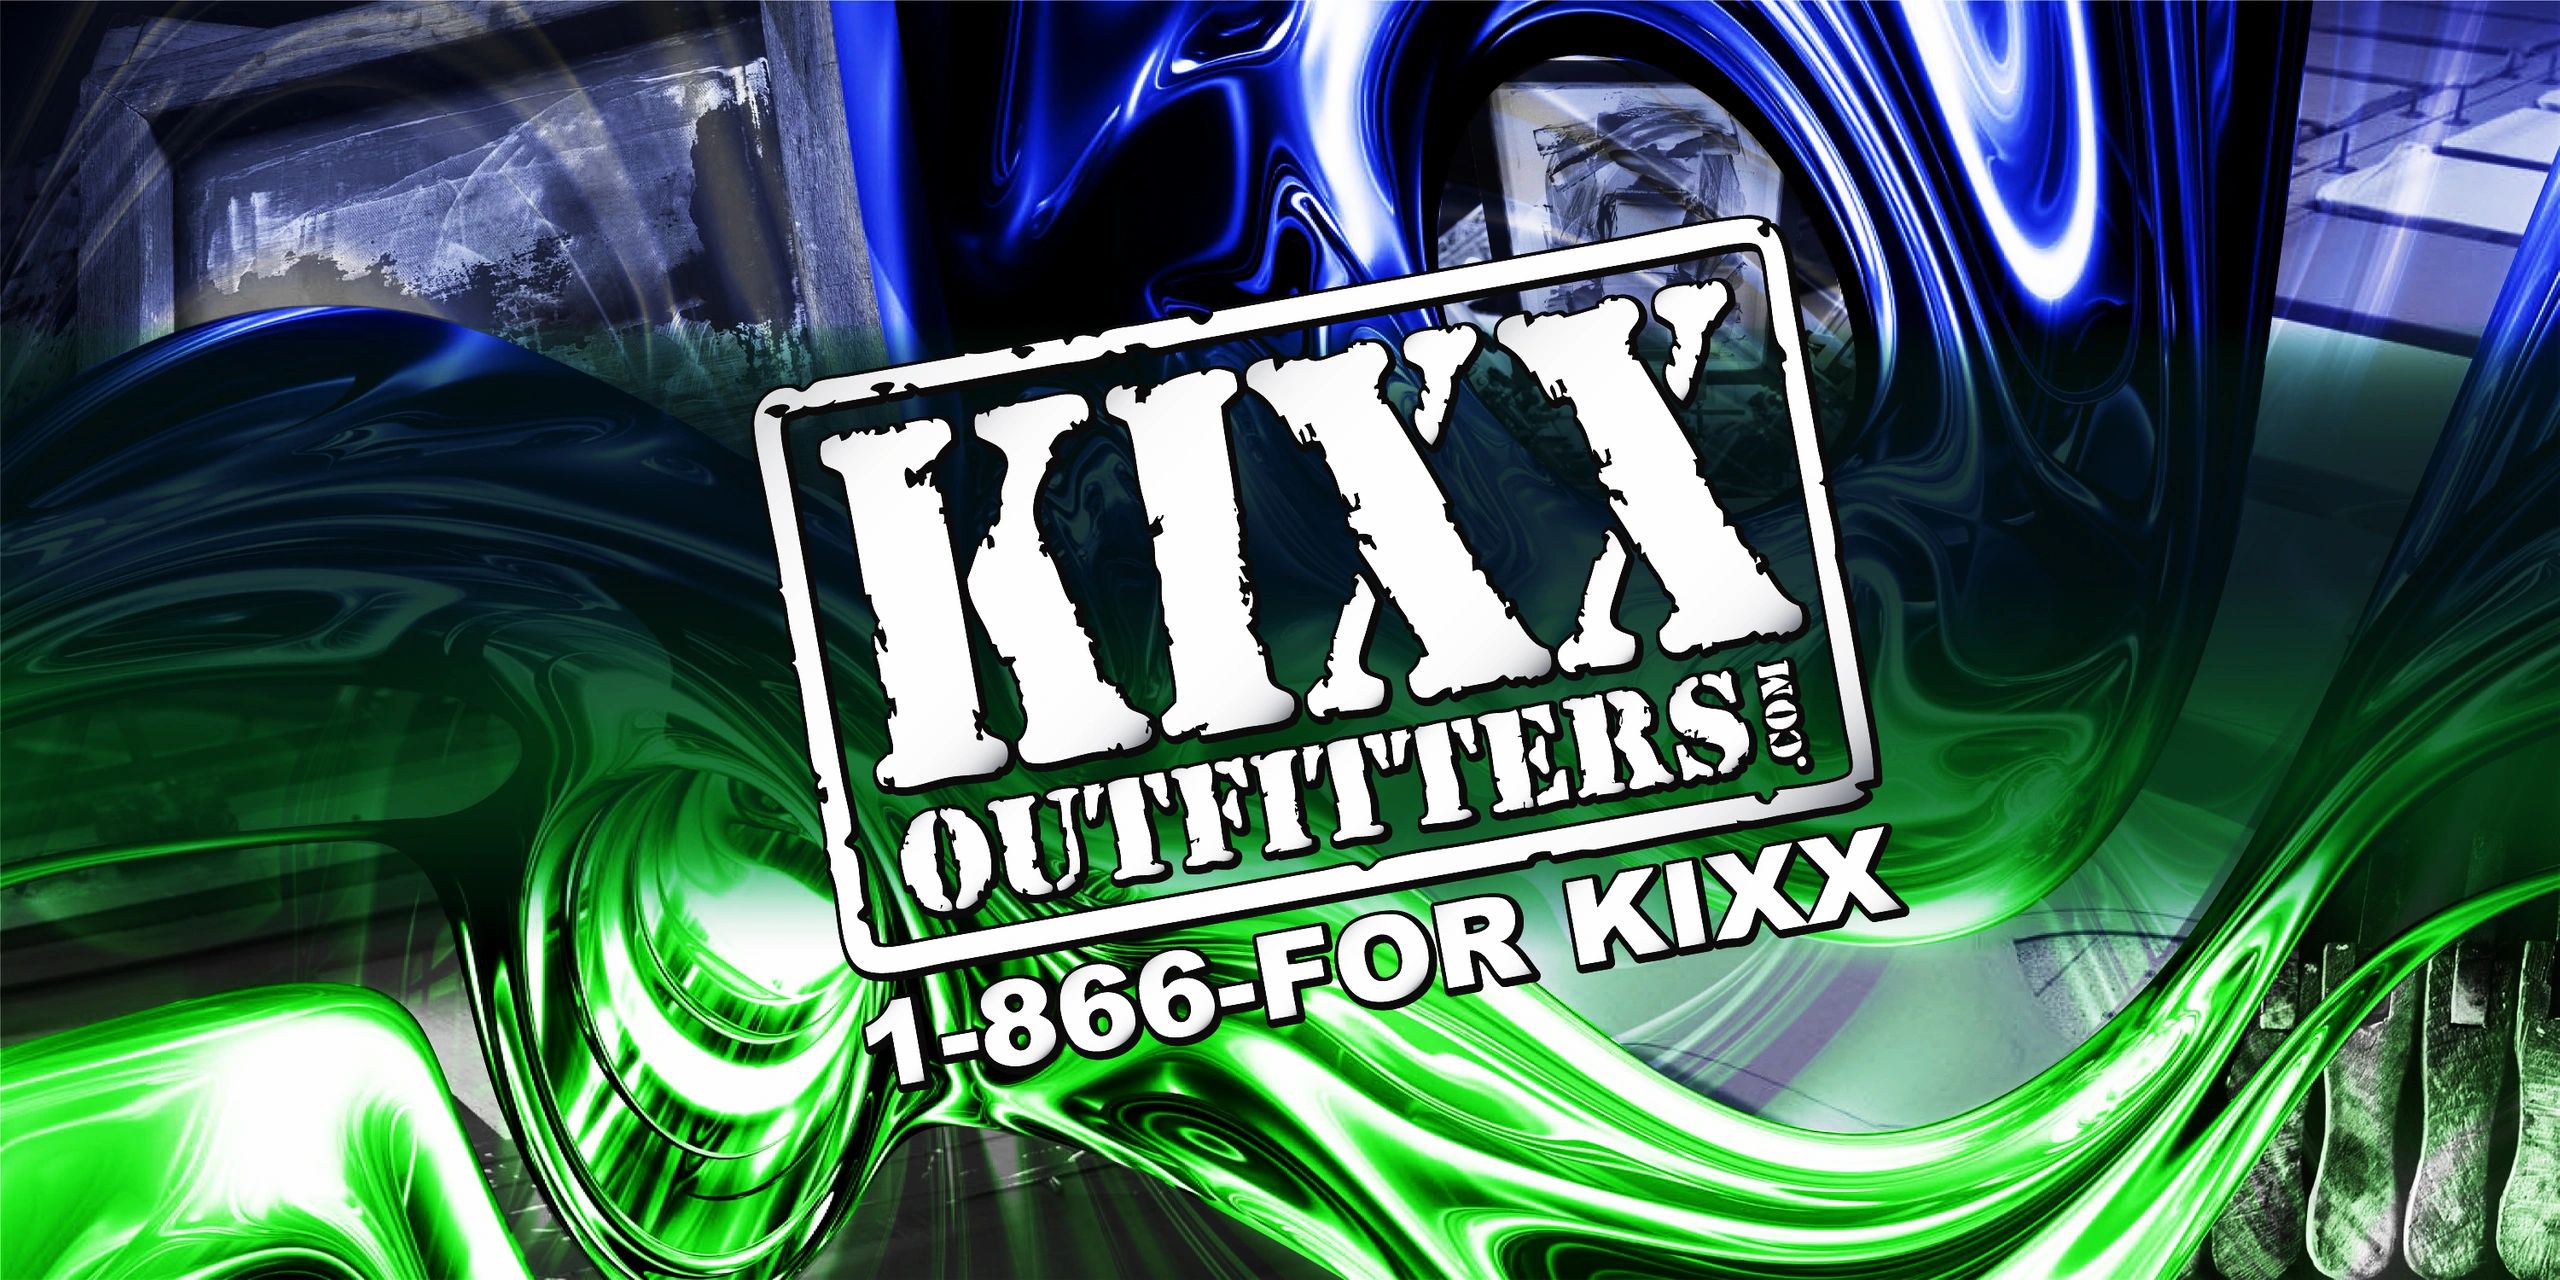 KixxOutfitters